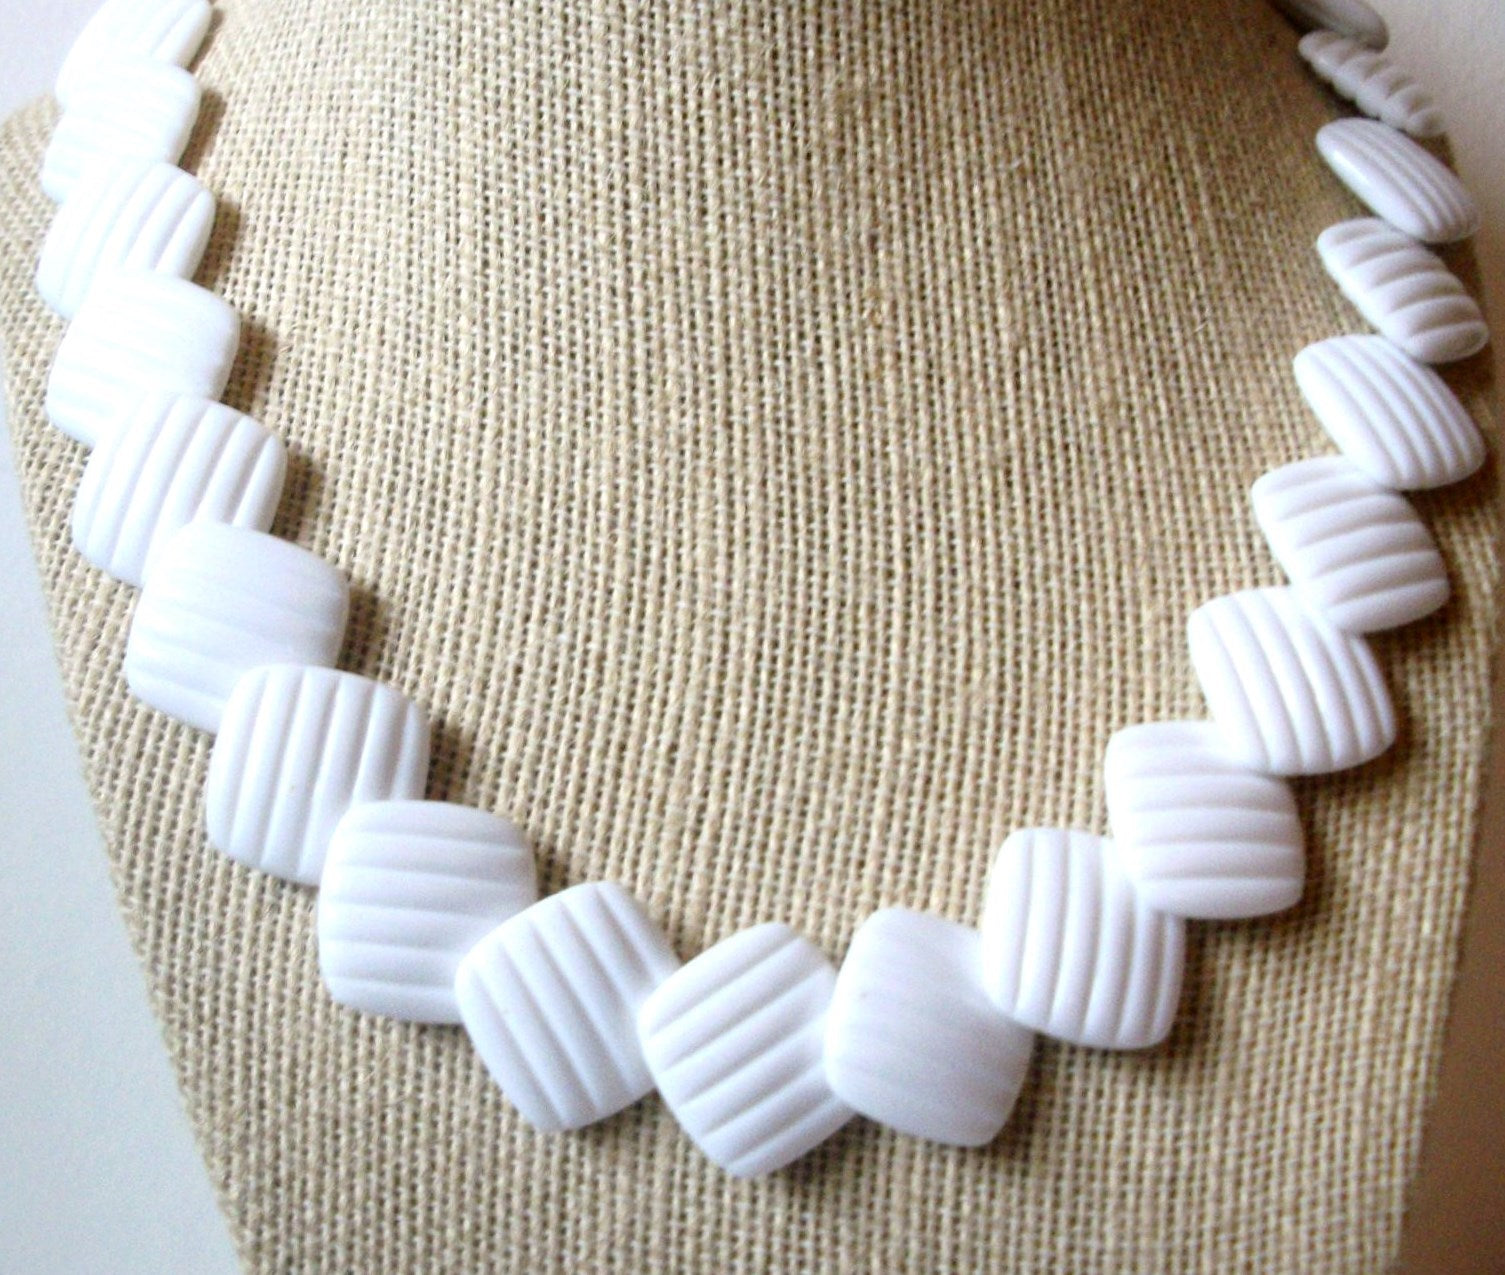 Retro Necklace White Old Plastic, Elegant Shorter Length 18" Long 82016